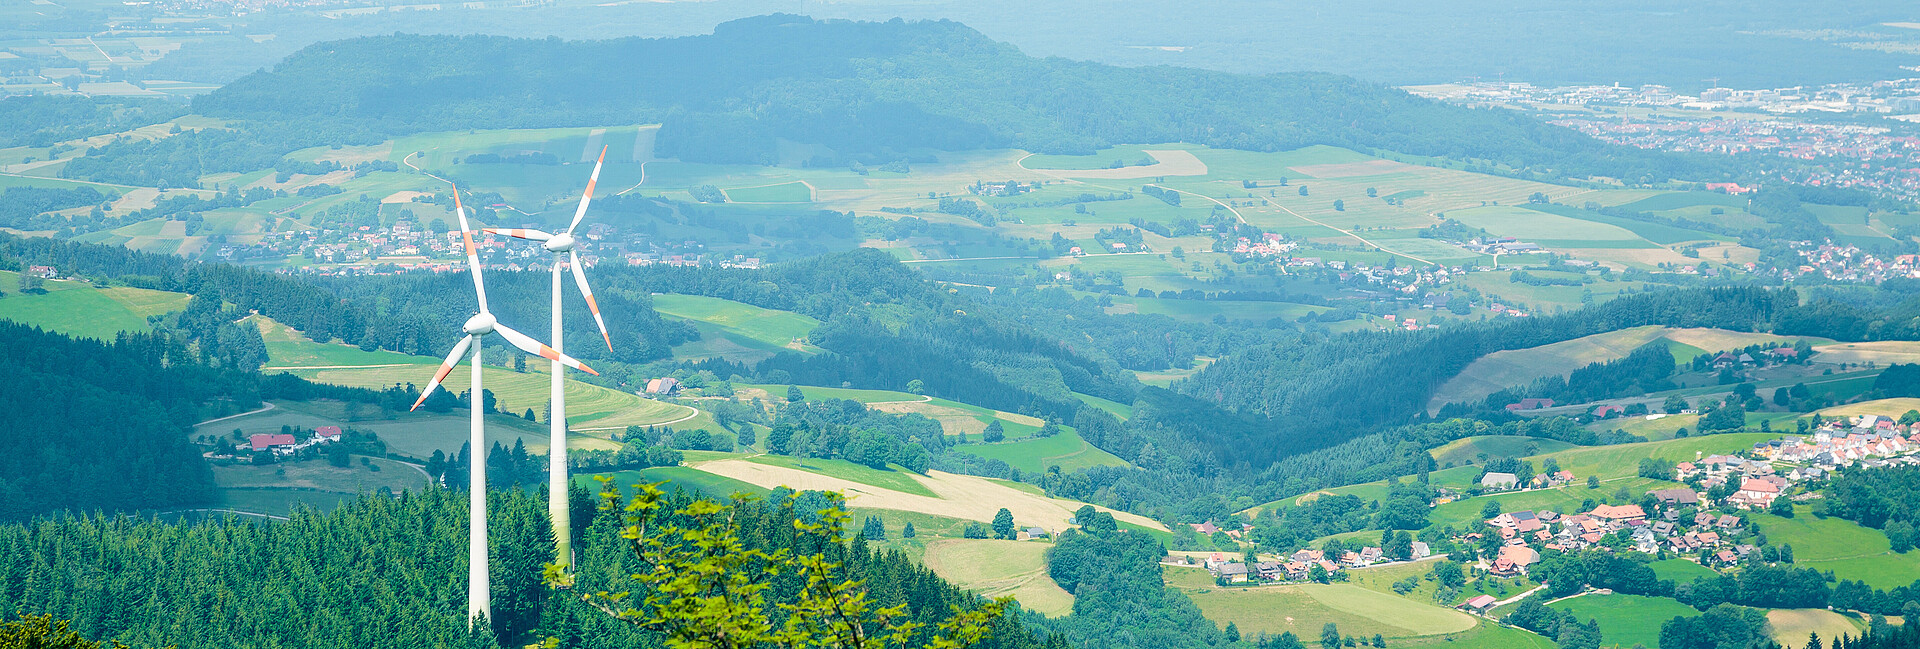 Man blickt von oben auf zwei Windenergieanlagen, die im Wald auf dem Berg Schauinsland stehen.